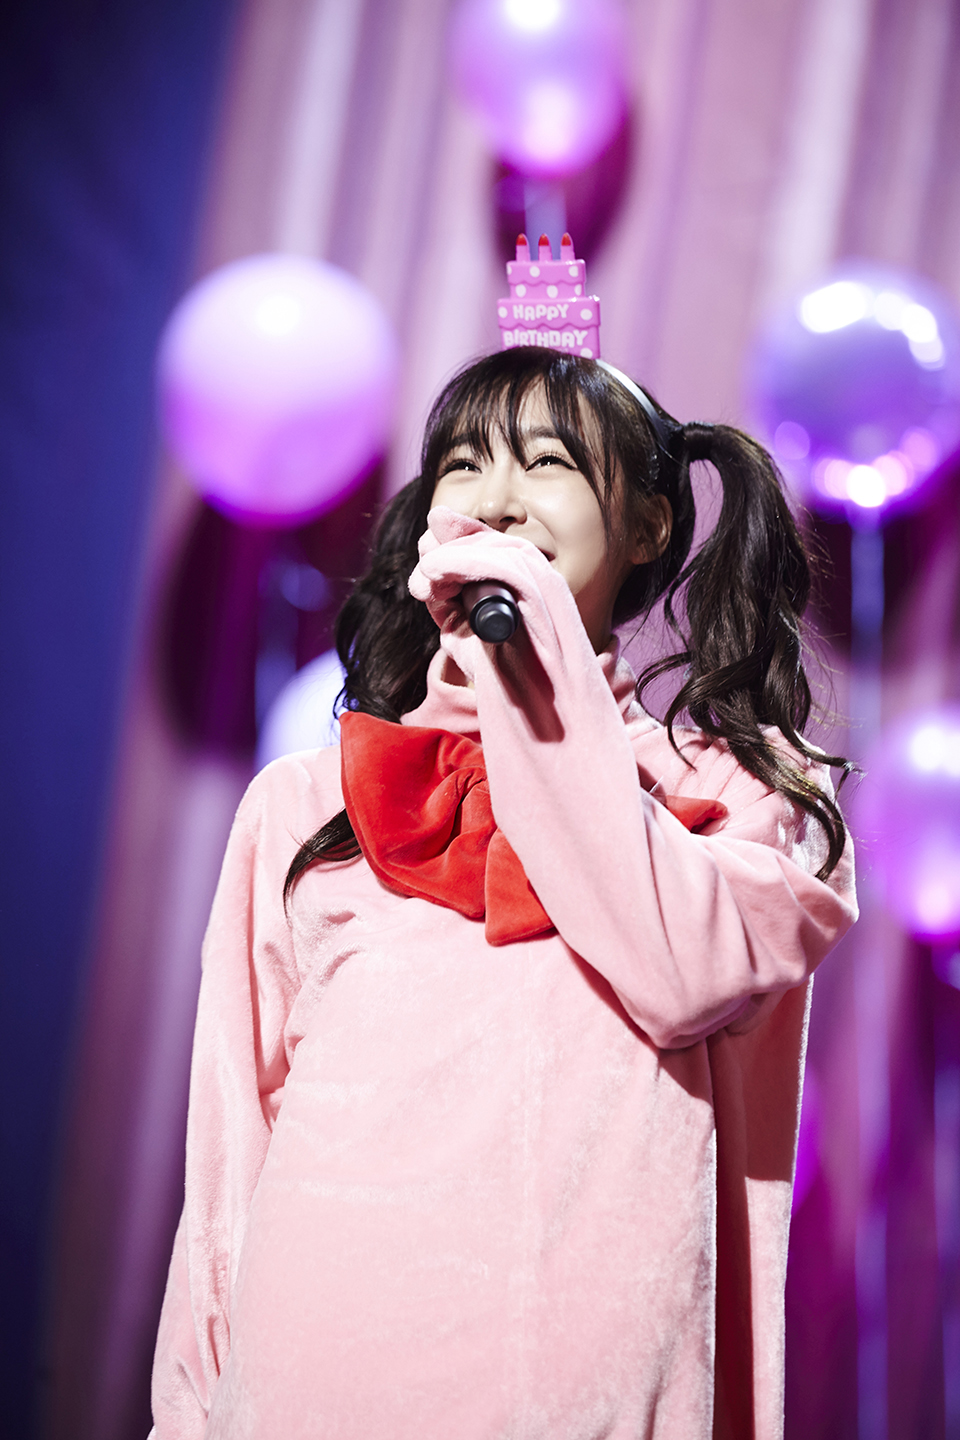 [PIC][01-08-2015]Tiffany tham dự "Tiffany's Birthday Party" tại SM COEX Artium vào hôm nay - Page 2 1BR3KAhpju